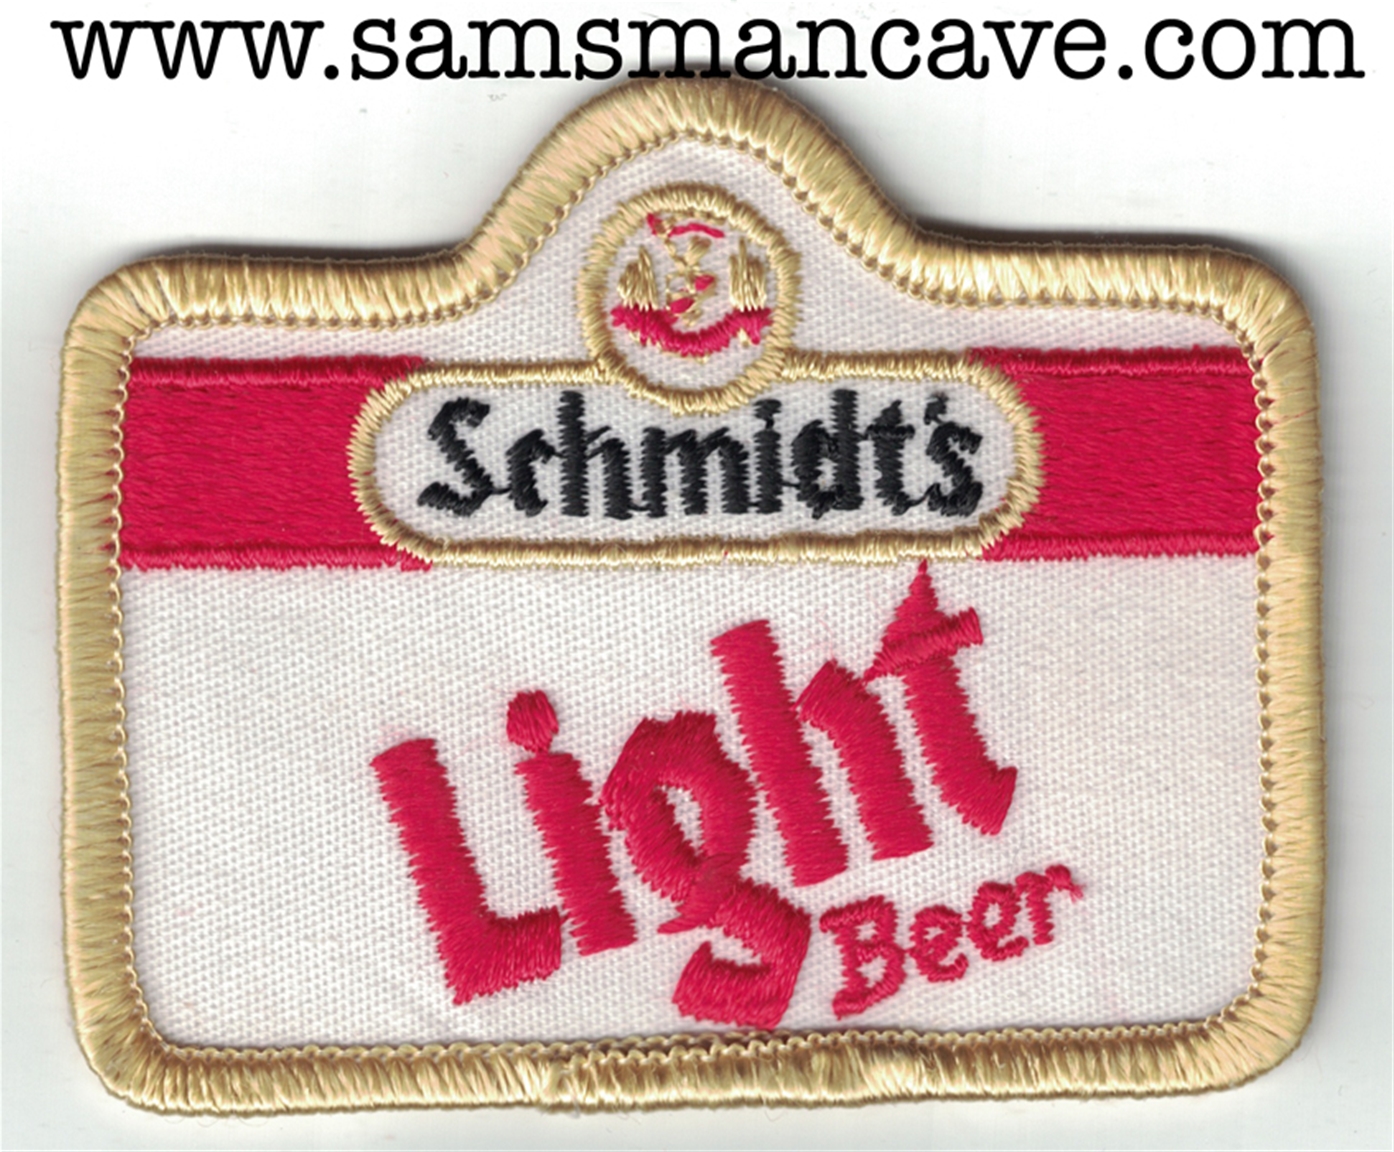 Schmidt's Light Beer Patch